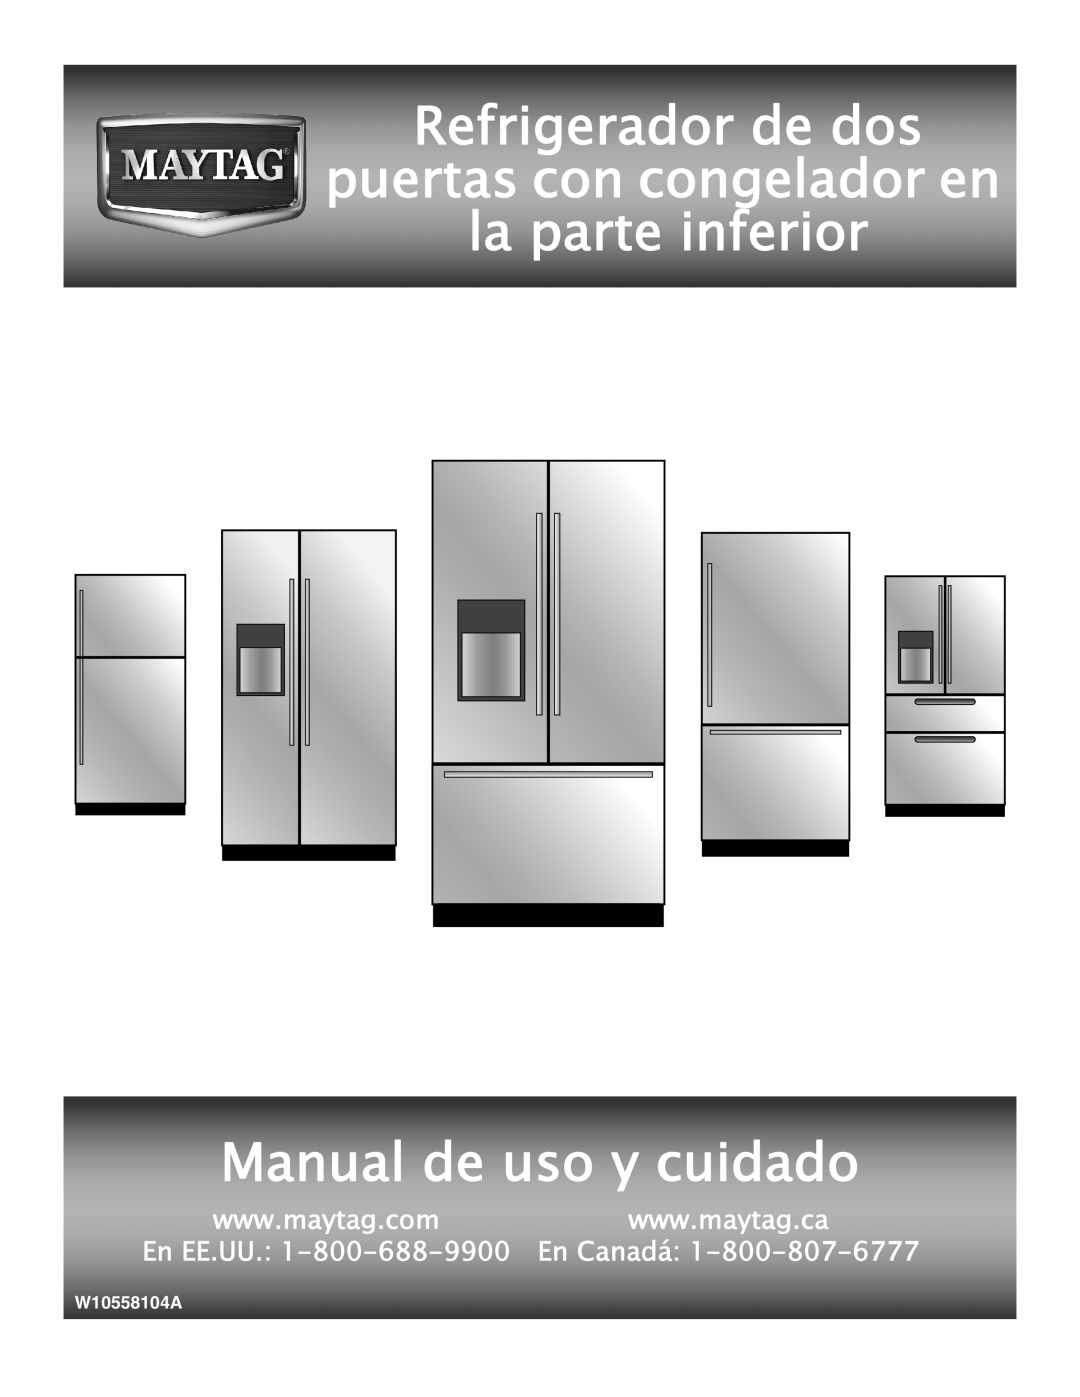 Maytag W10558104A manual Refrigerador de dos puertas con congelador en la parte inferior, Manual de uso y cuidado, En EE.UU 